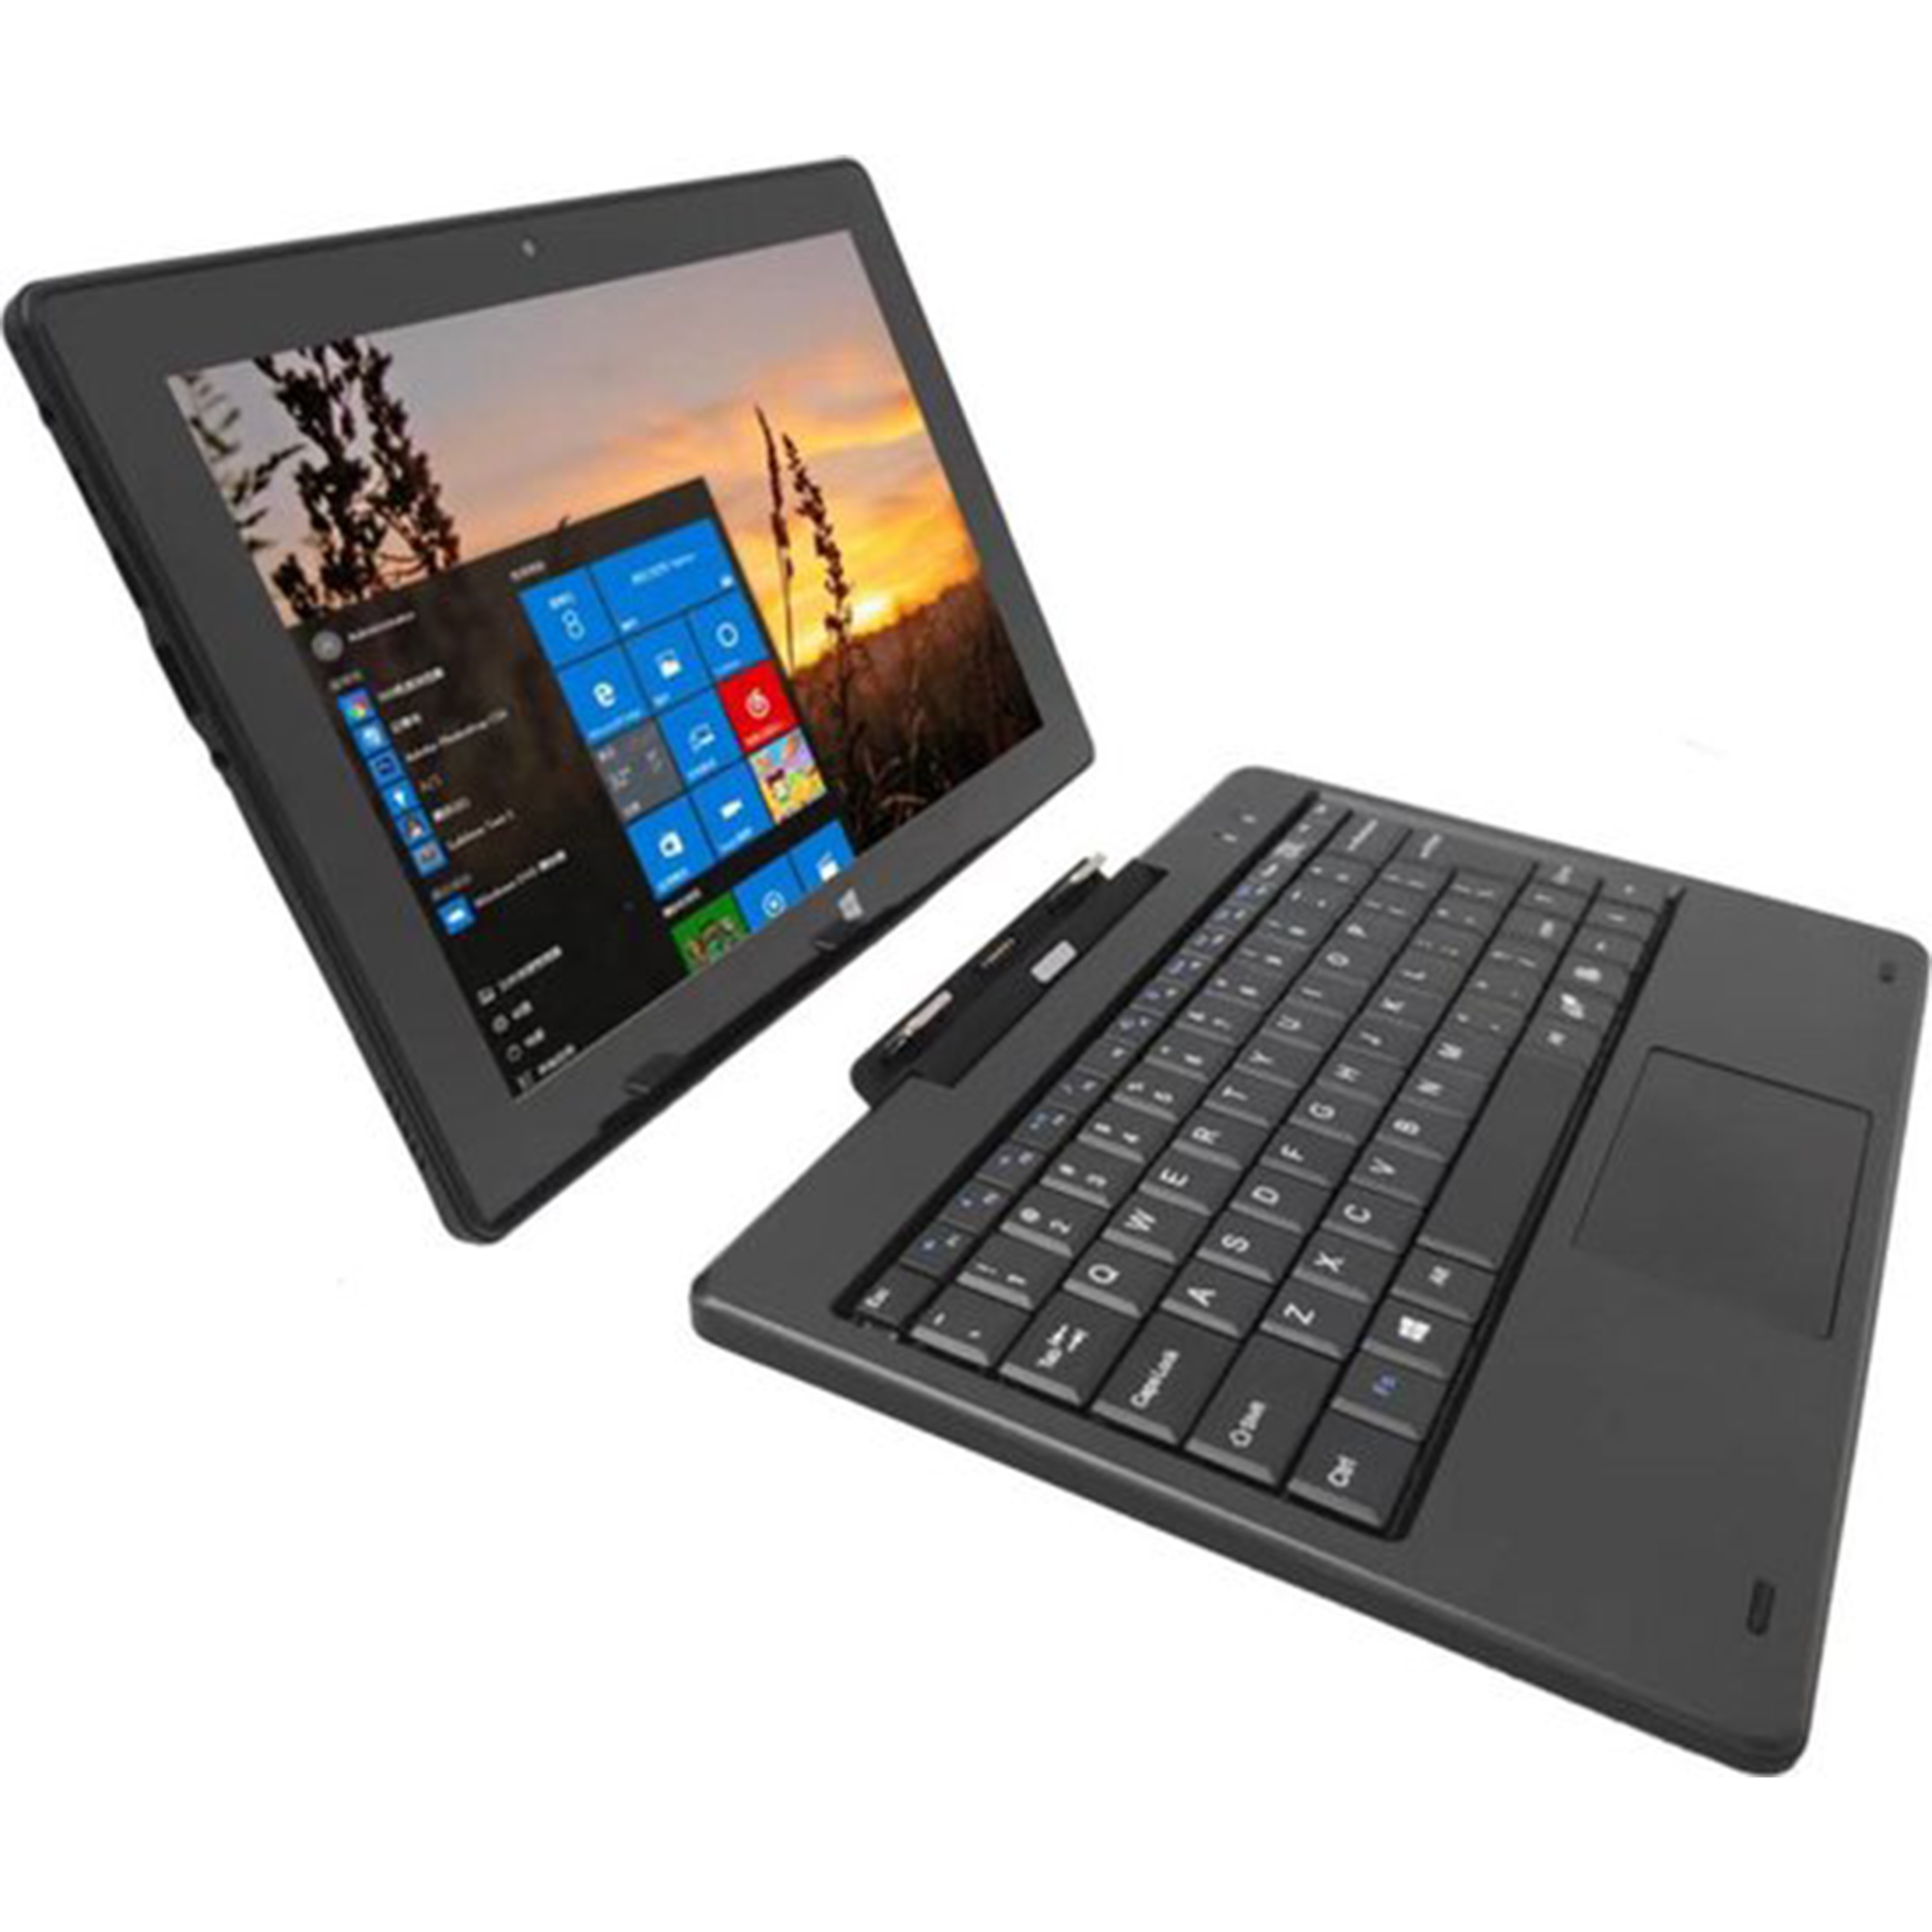 GB, mit 64 tablet Windows LIPA 11 tablet, Zoll, Black 10,1 KP-01 Windows Keyboard,